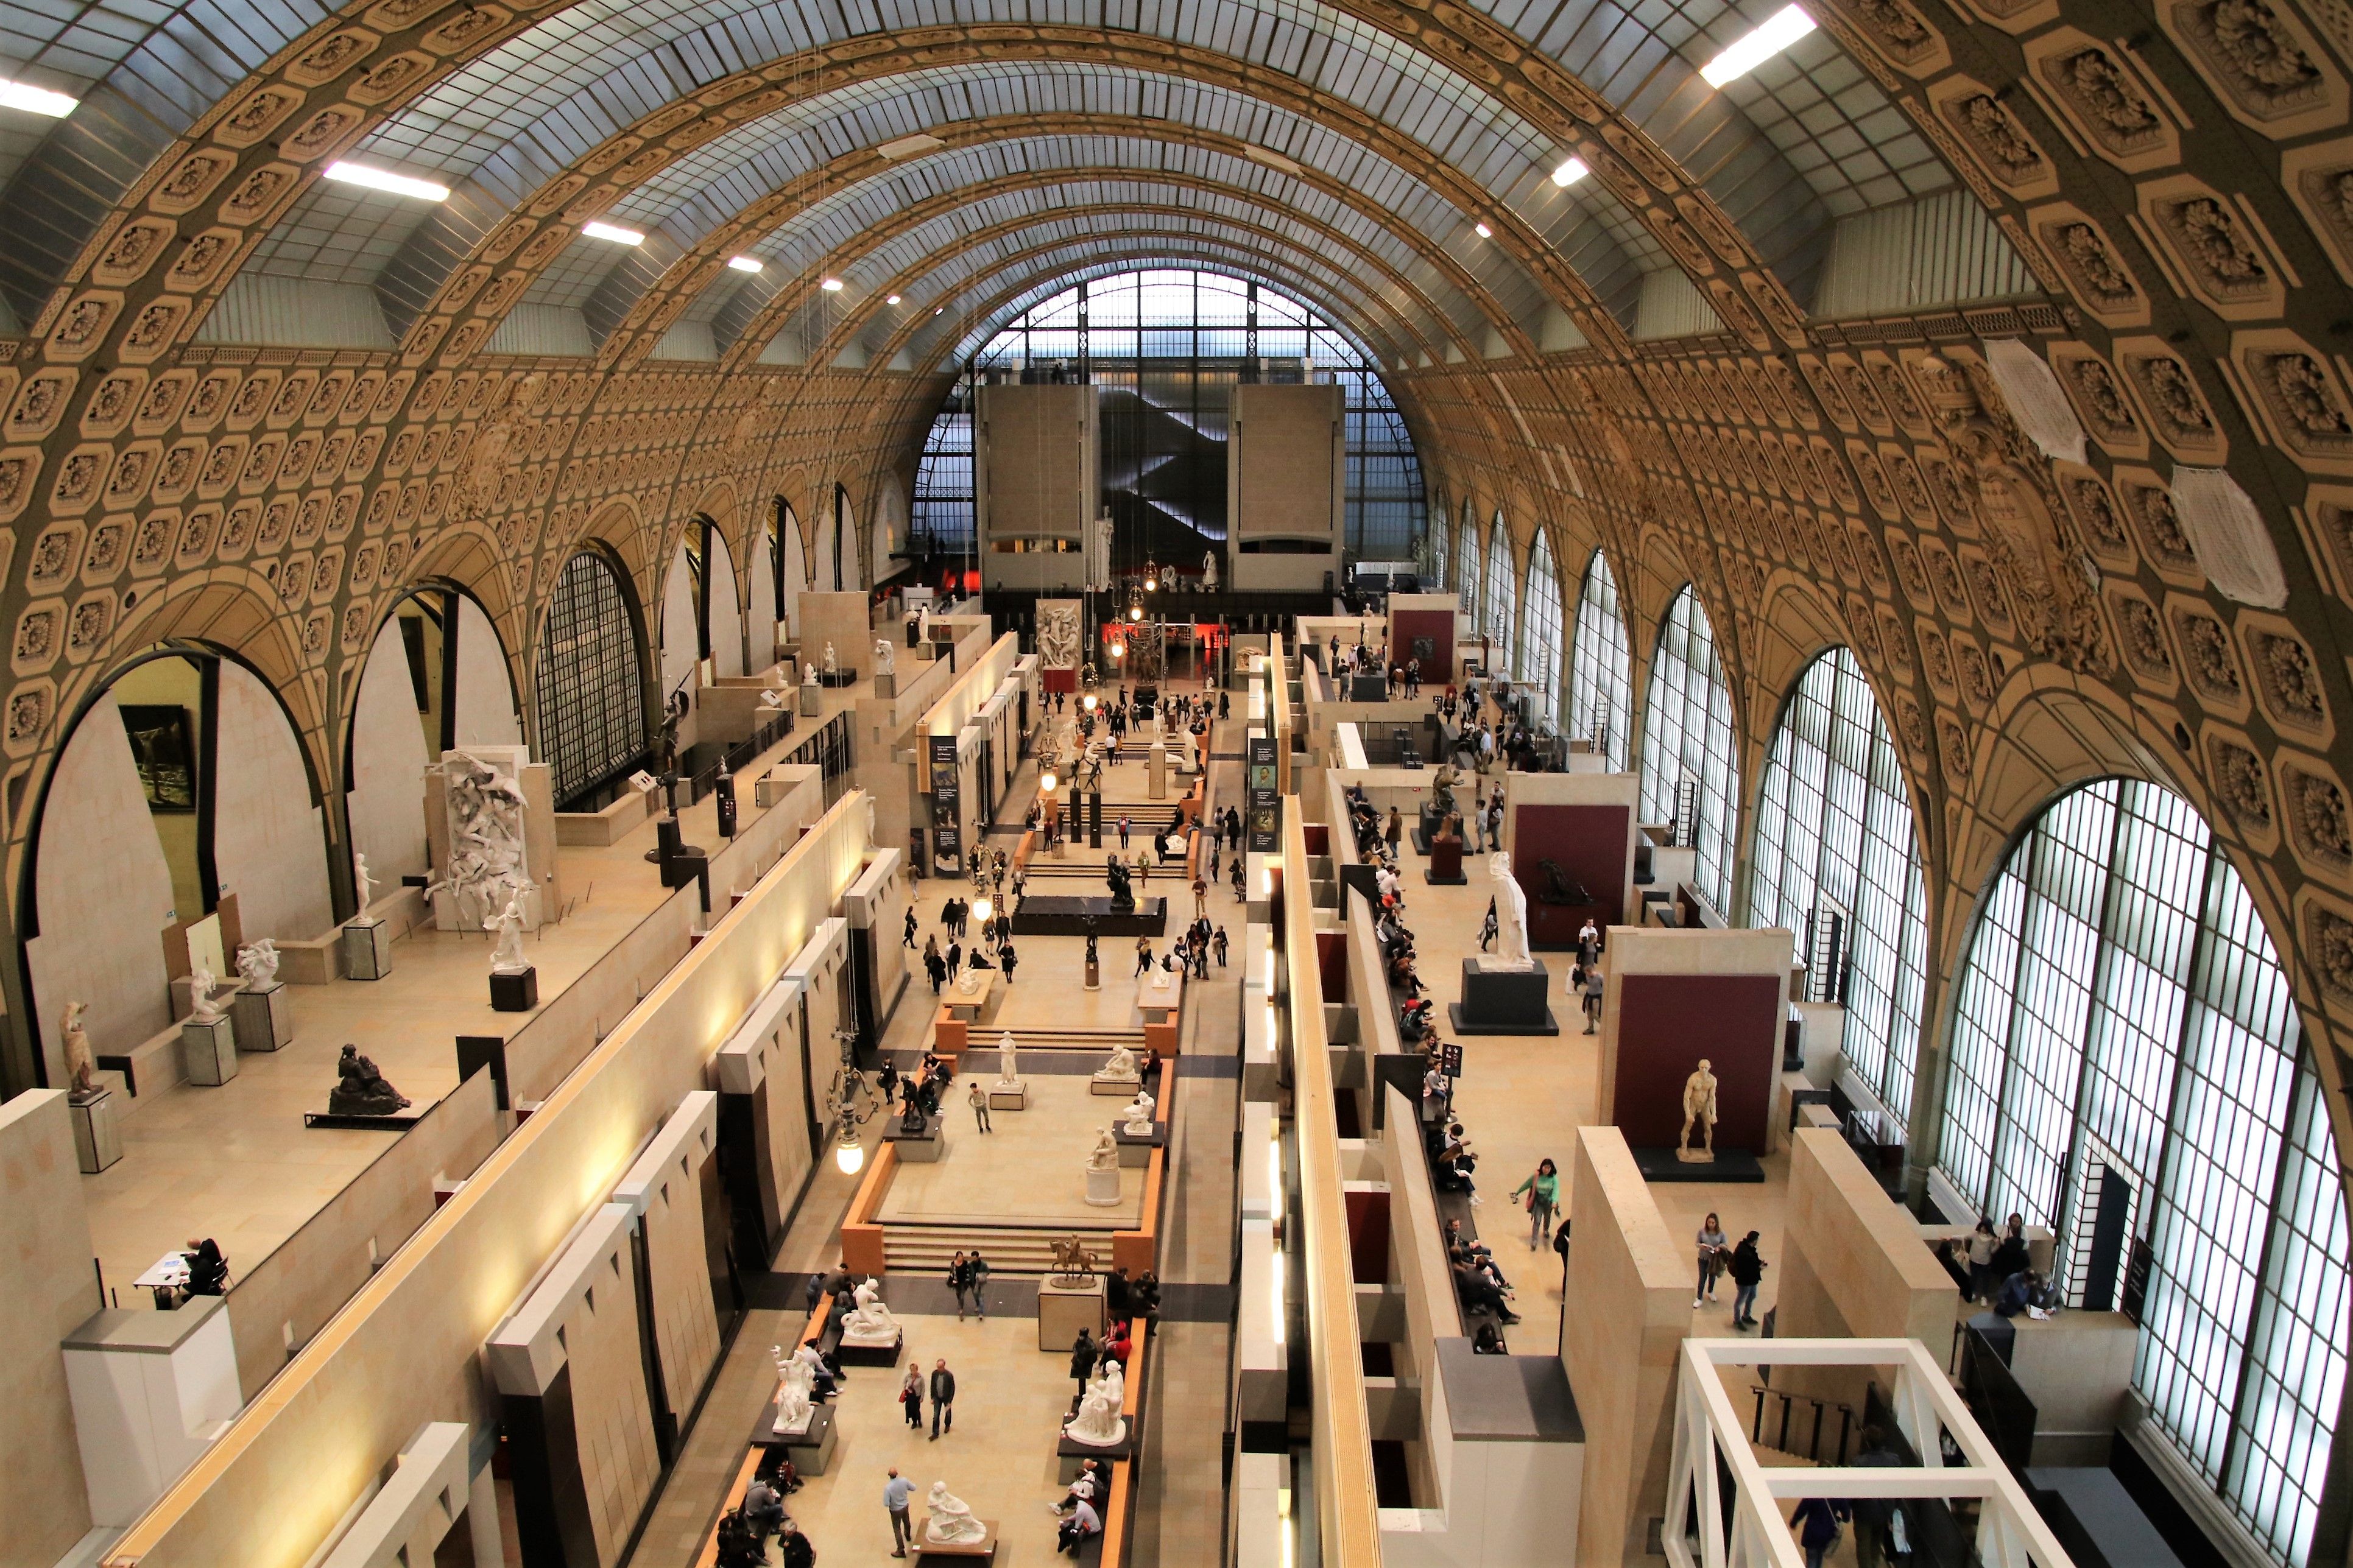 Musée d'Orsay, Paris, Paris, France — Google Arts & Culture